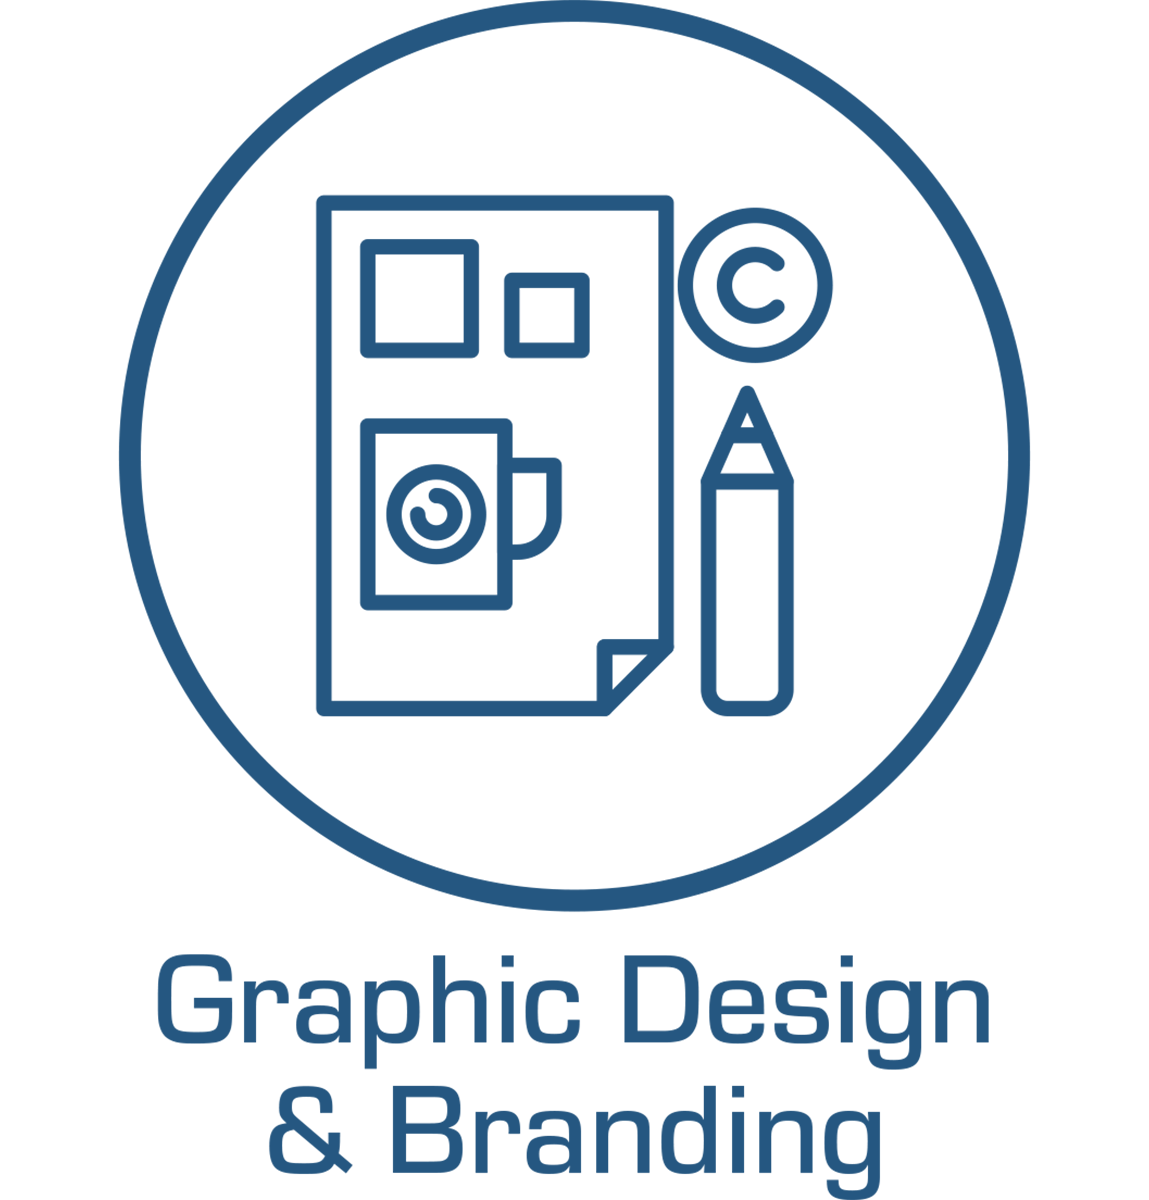 graphic design badge